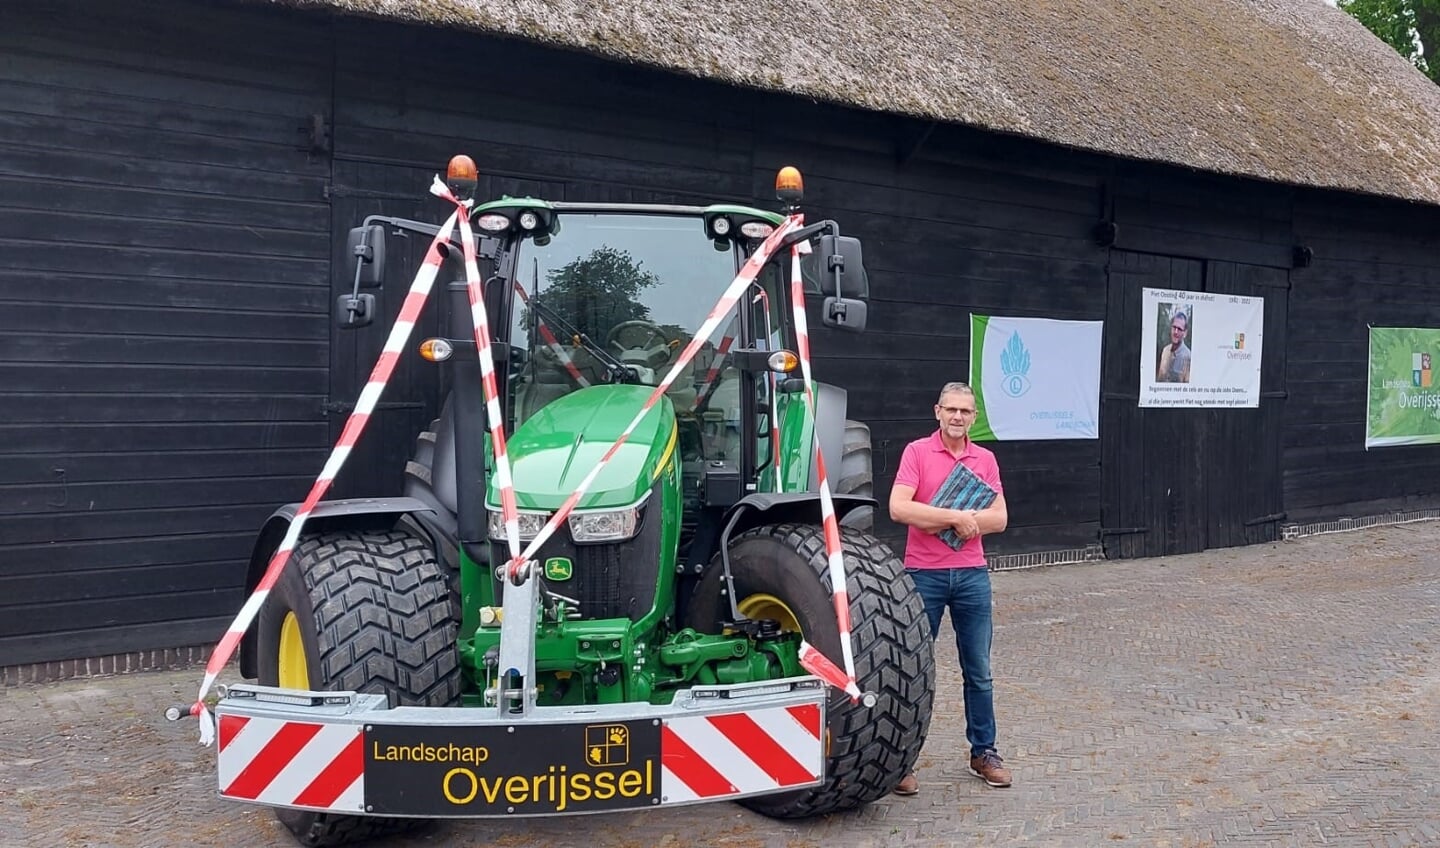 De jubilerende Piet Oosting hoopt nog jaren van zijn werk bij Landschap Overijssel te mogen genieten. 